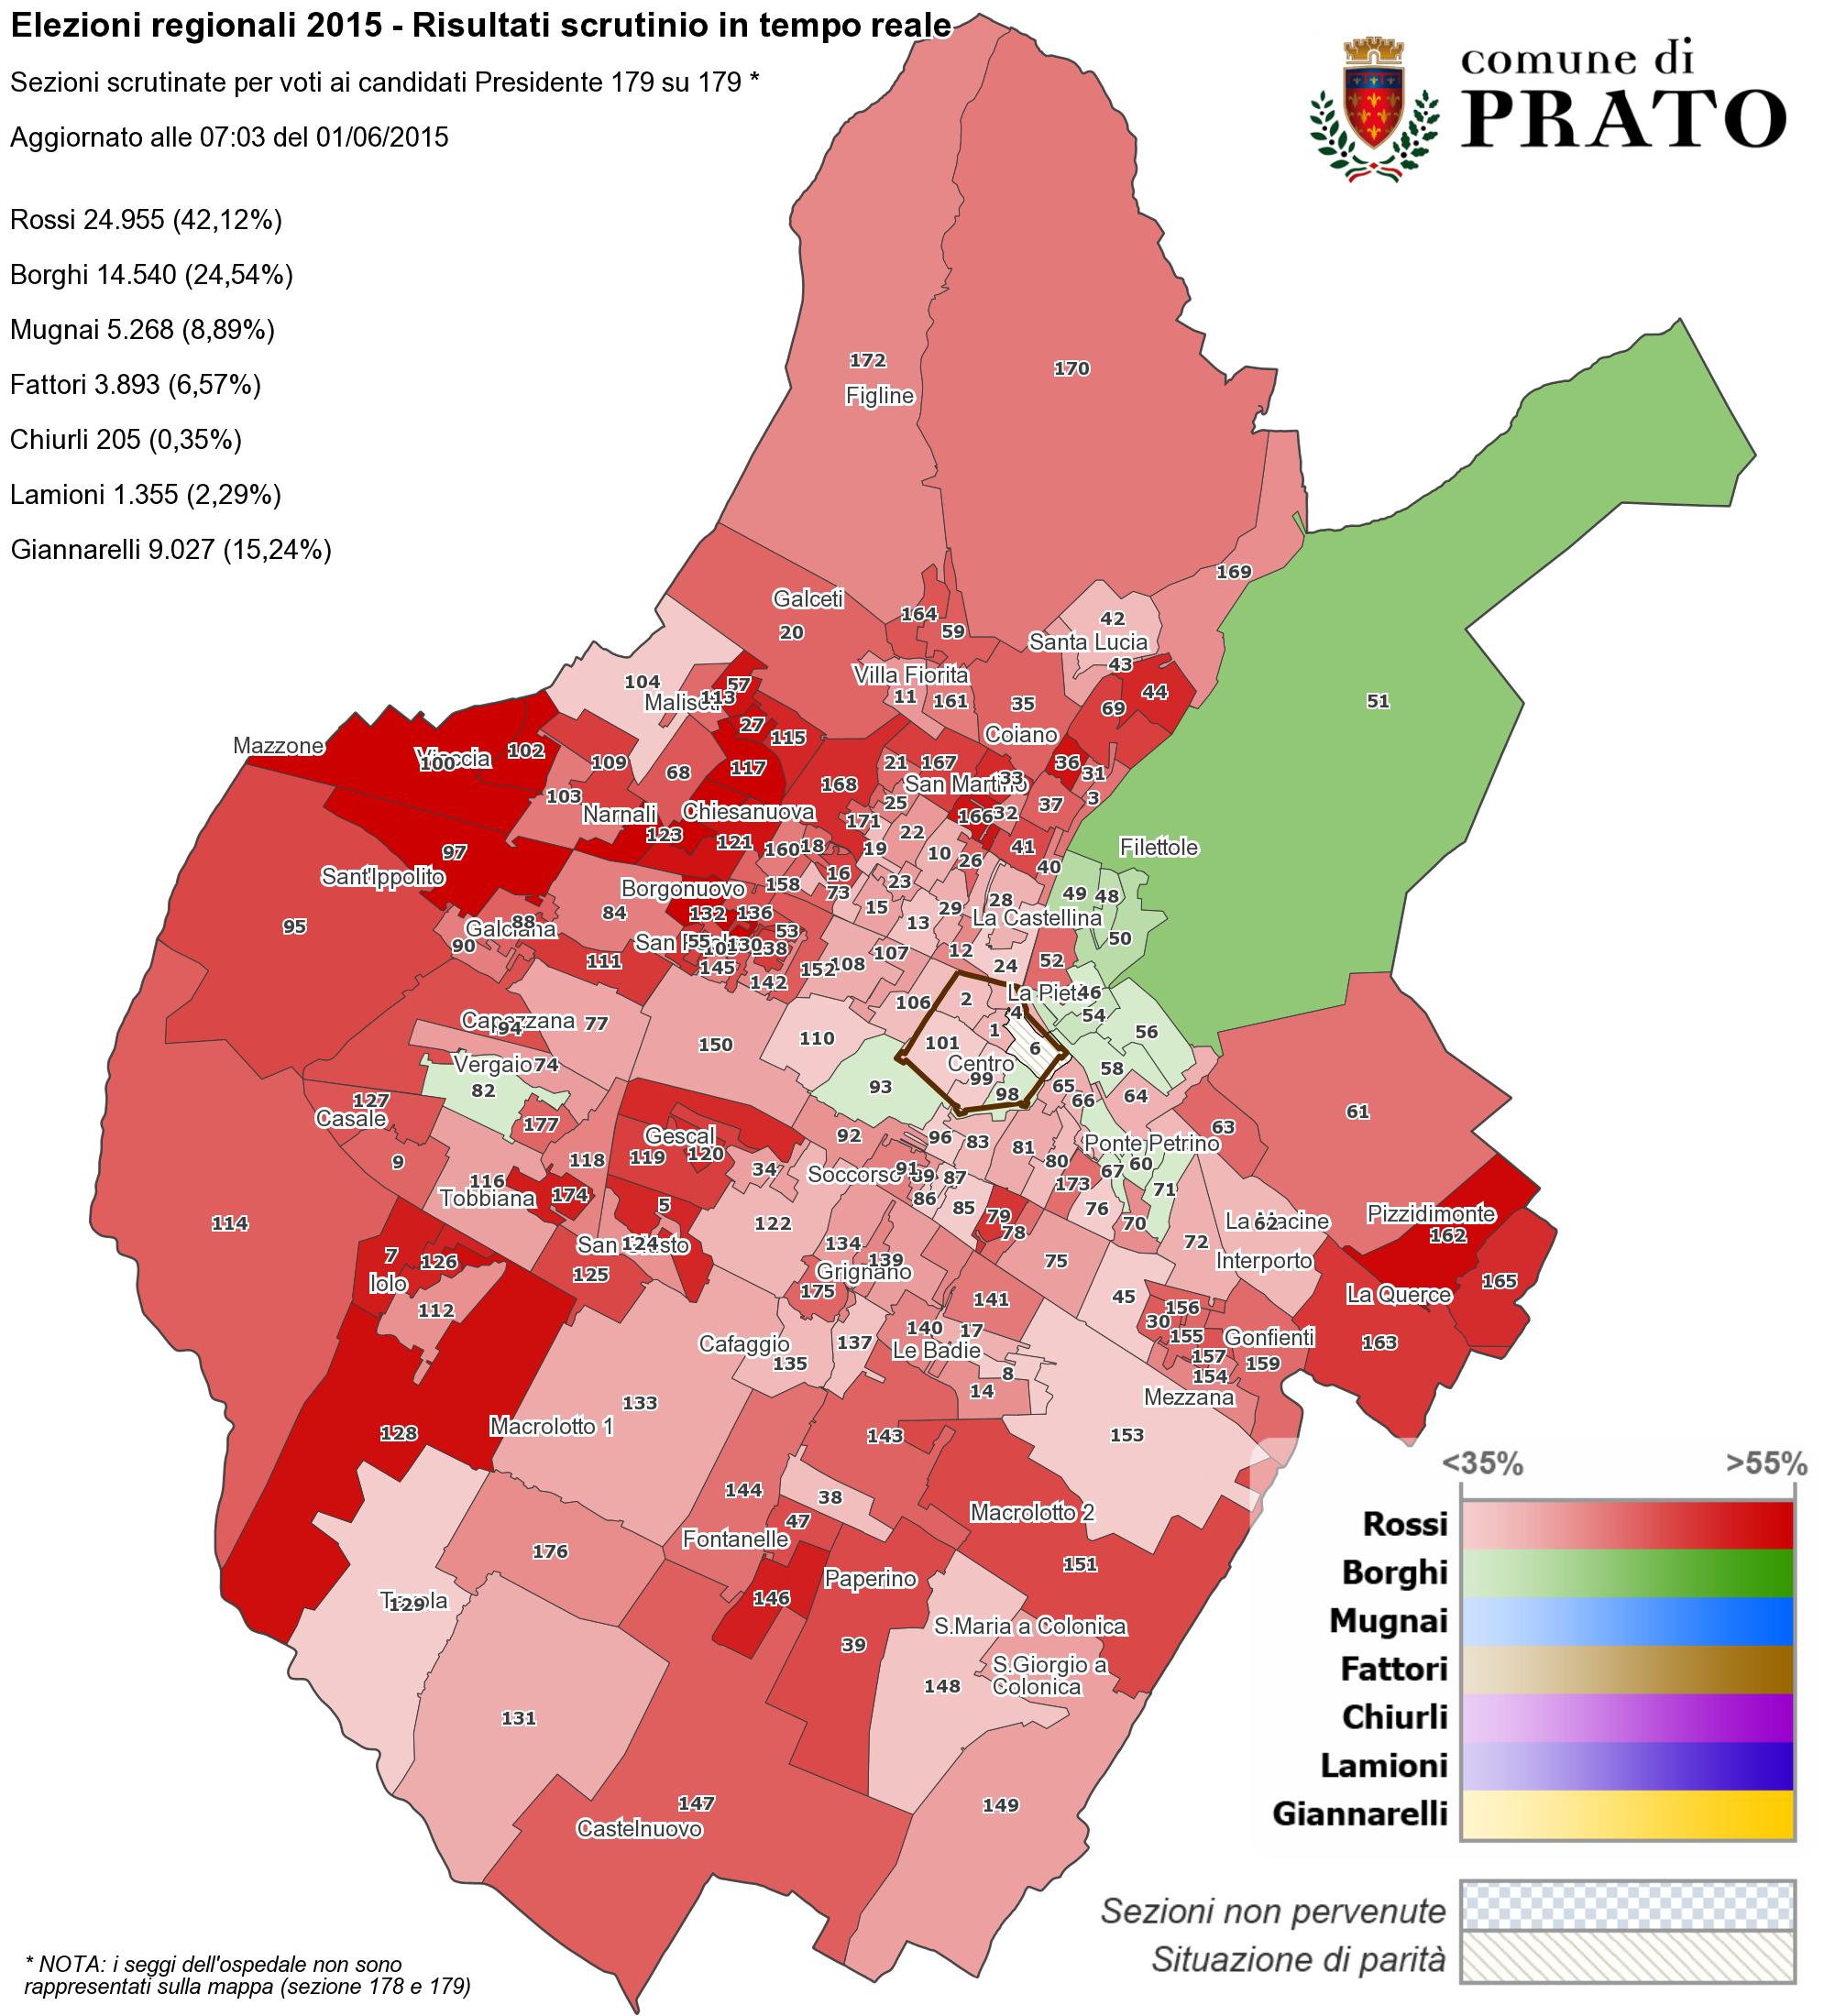 Mappa di Prato con la distribuzione dei voti ai candidati Presidente per la Regione Toscana